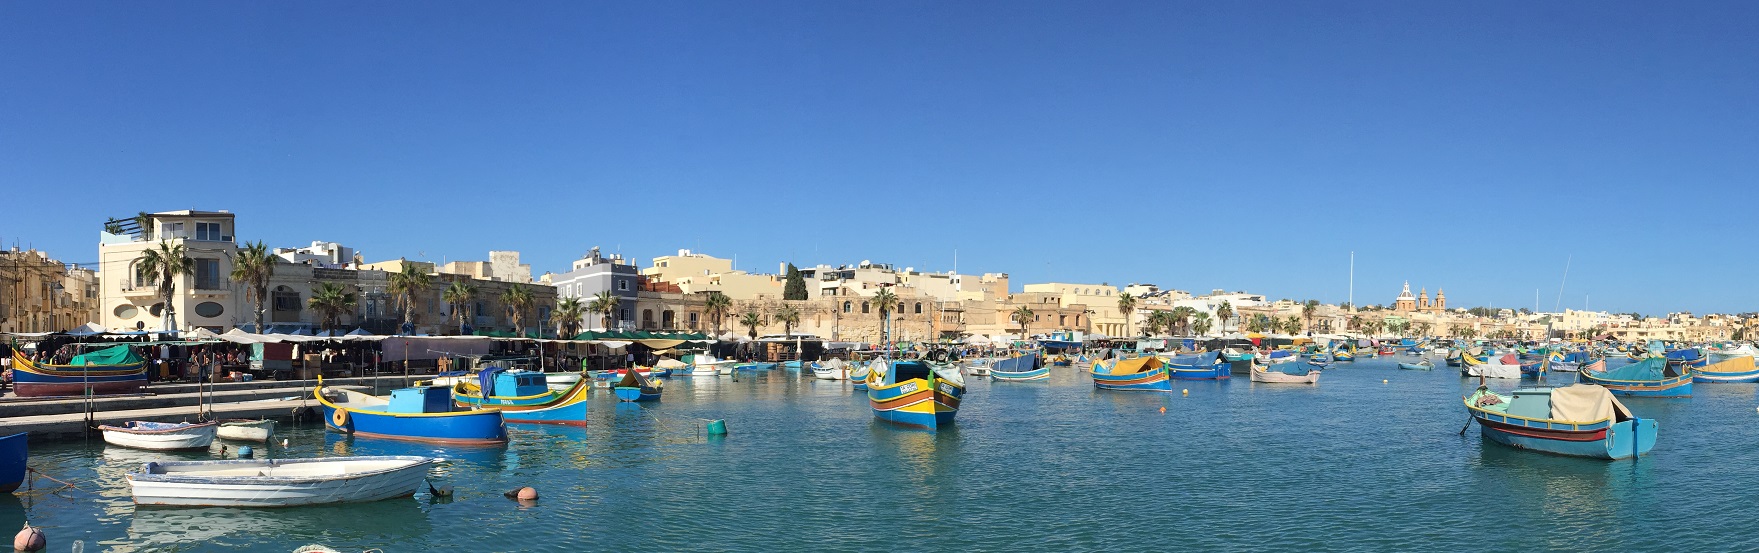 Marsaxlokk, kikötő